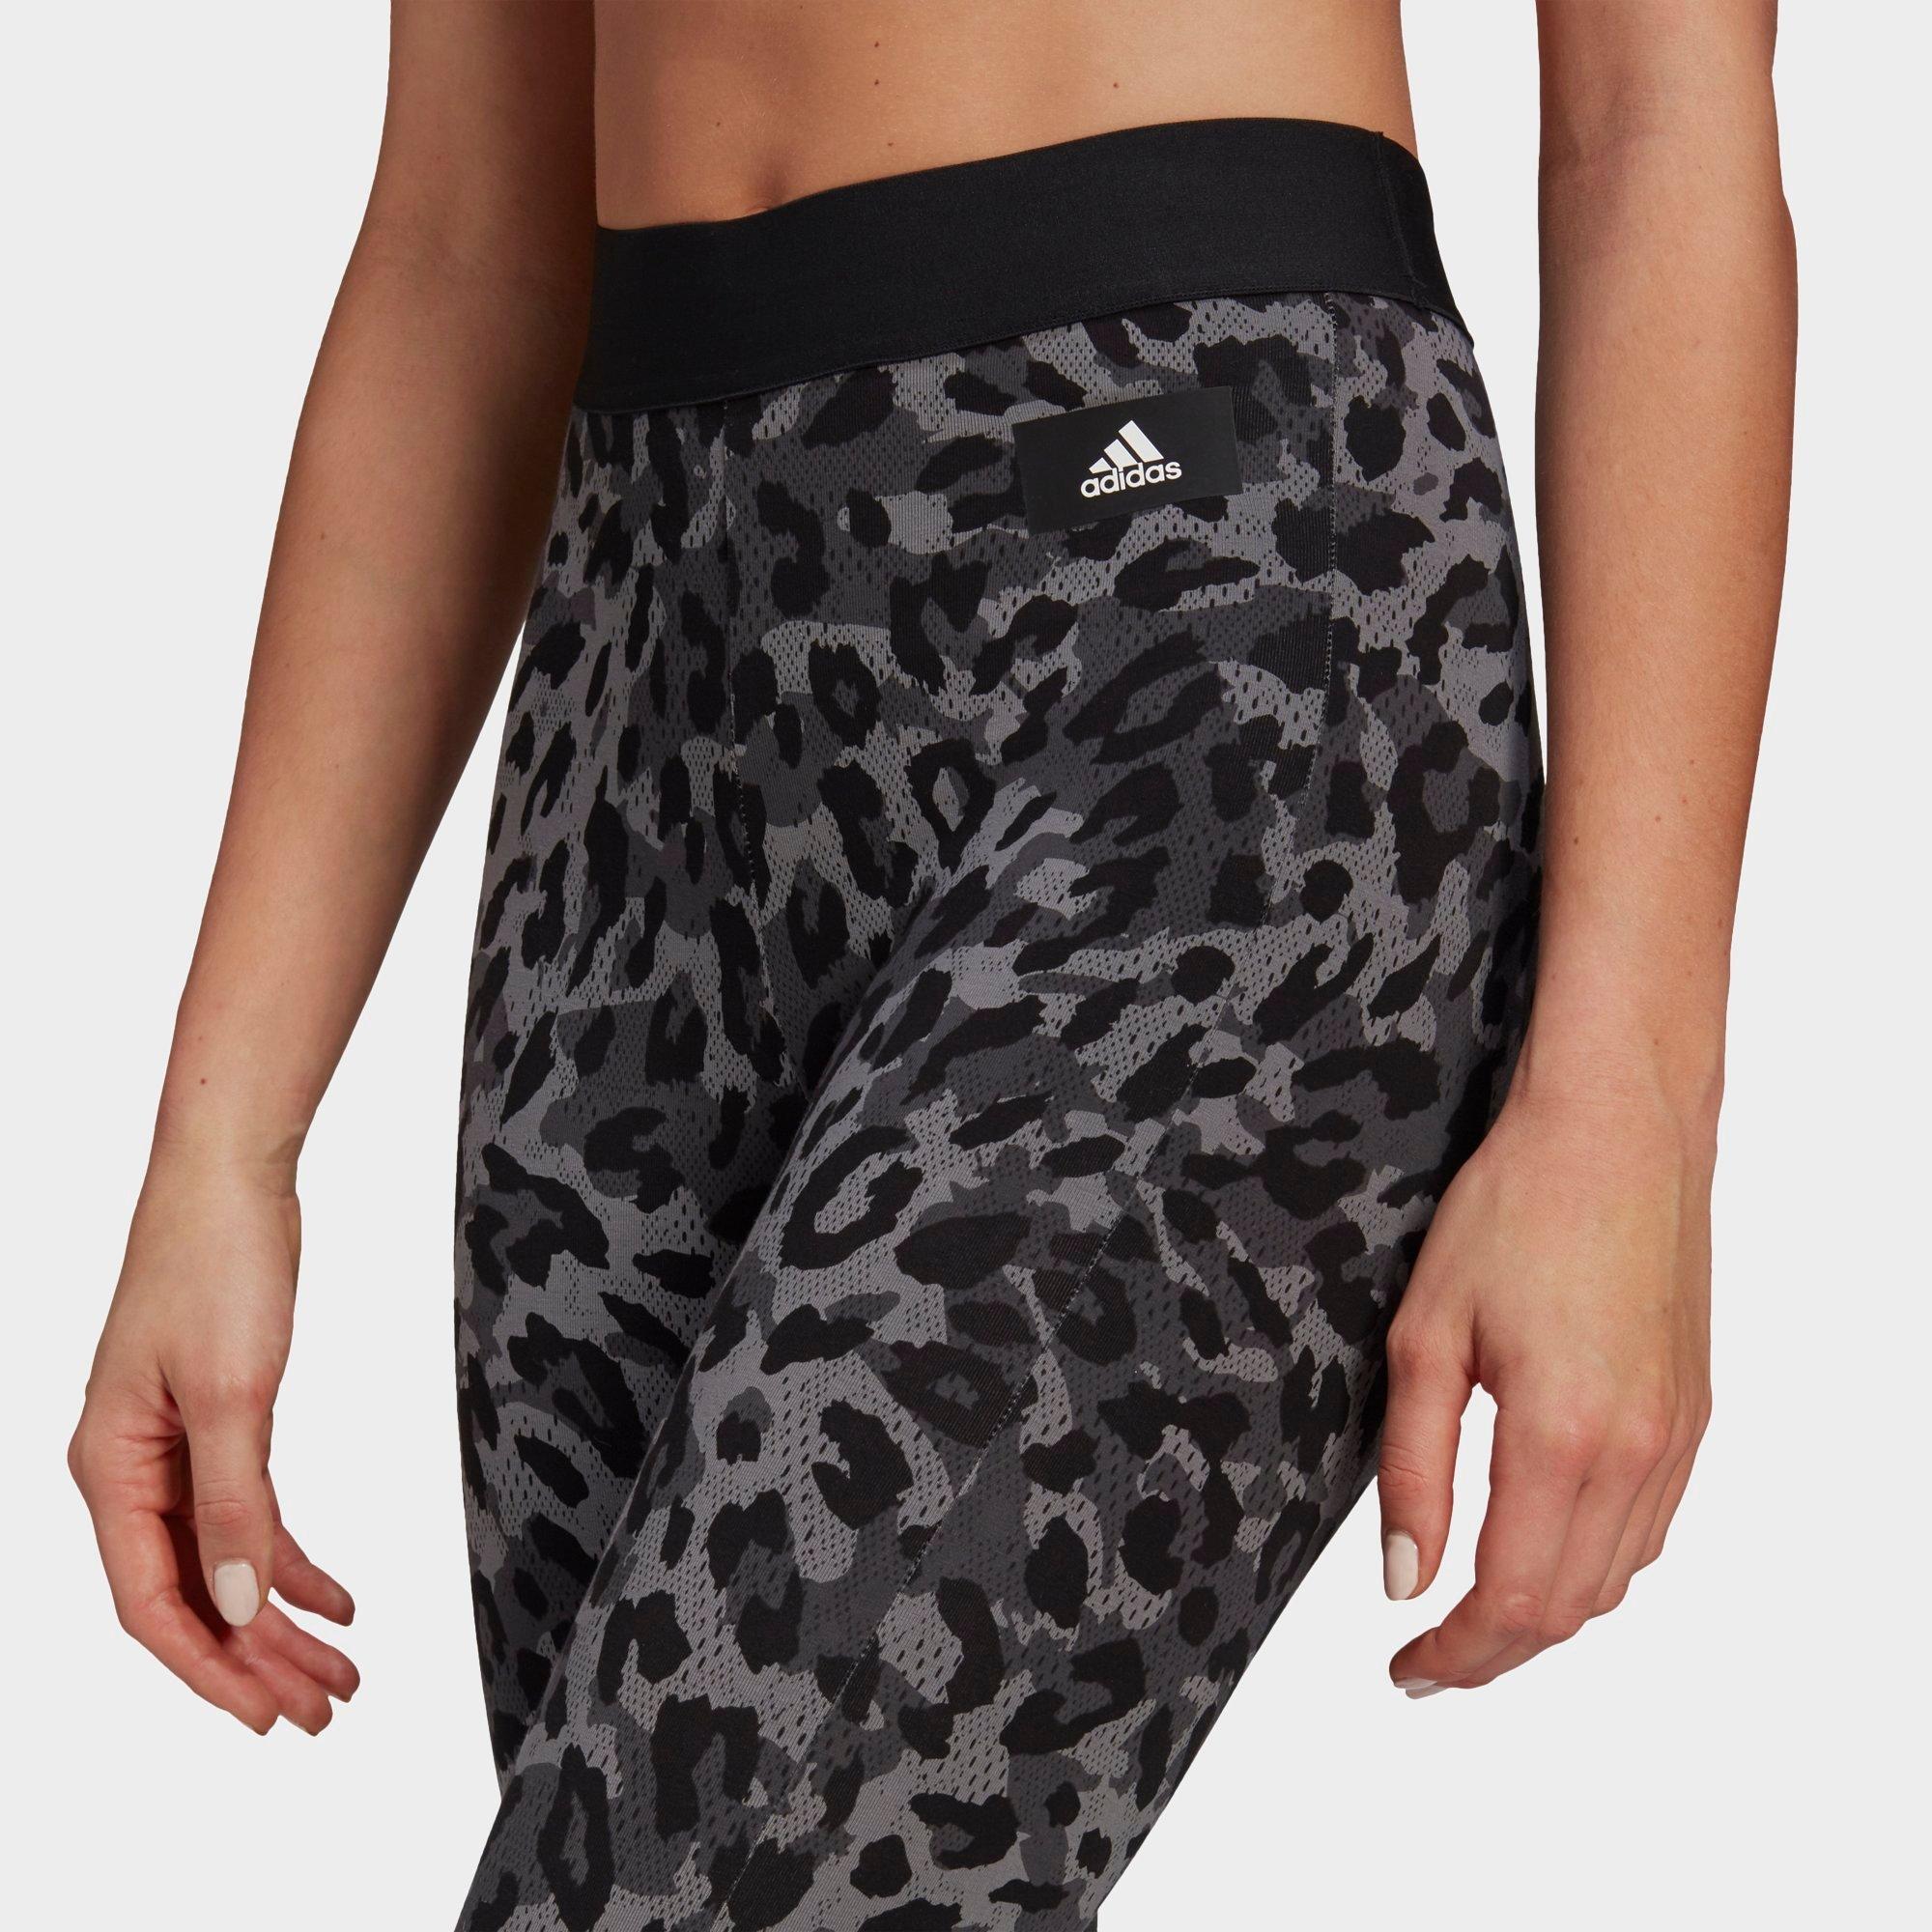 adidas leggings leopard